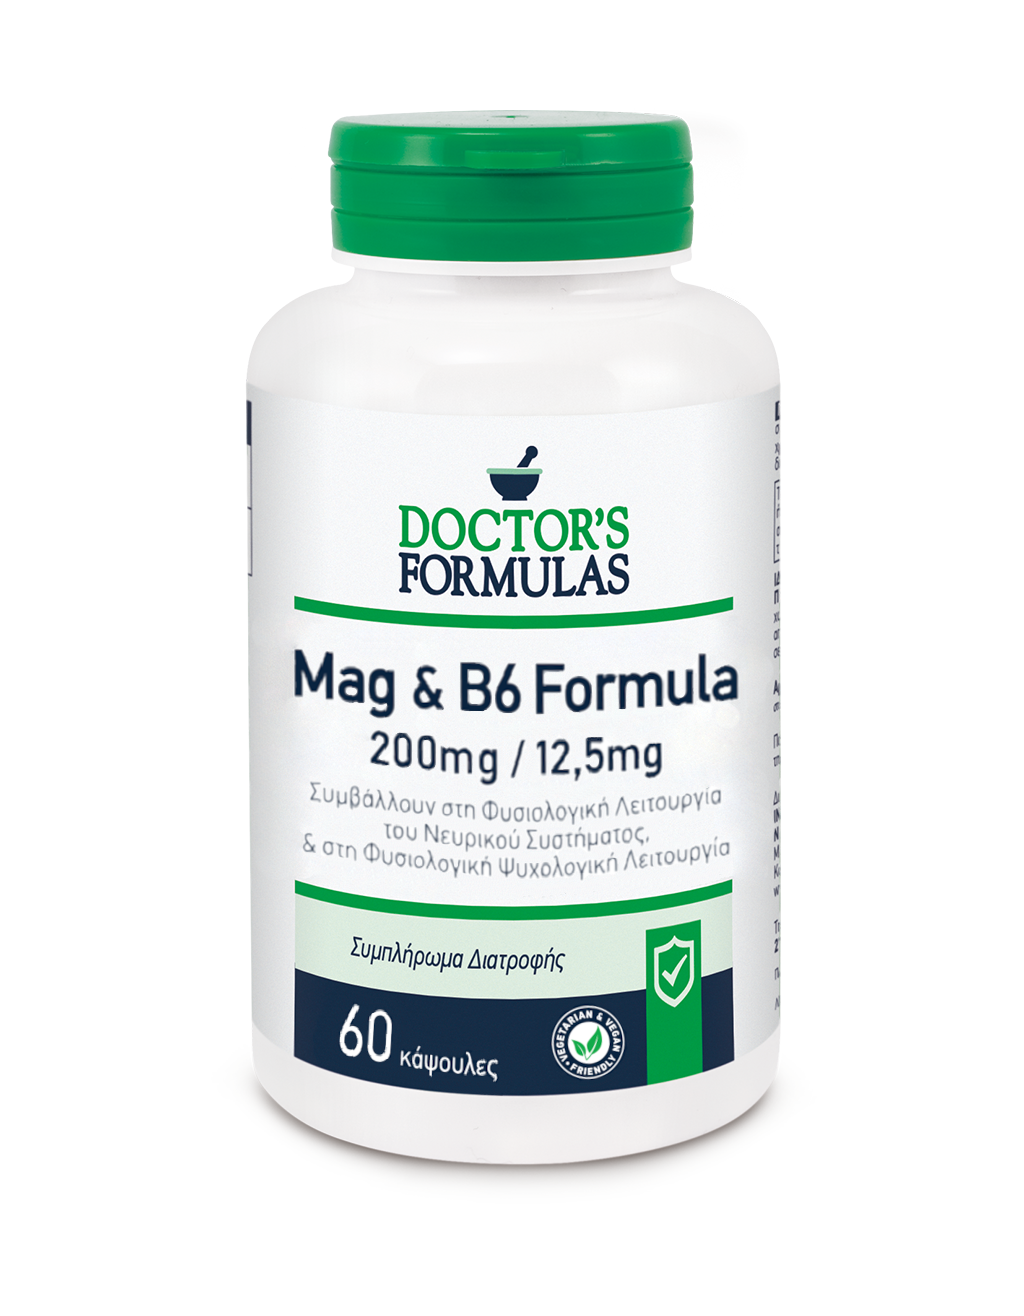 MAG & B6 FORMULA | Normal Psychological Function